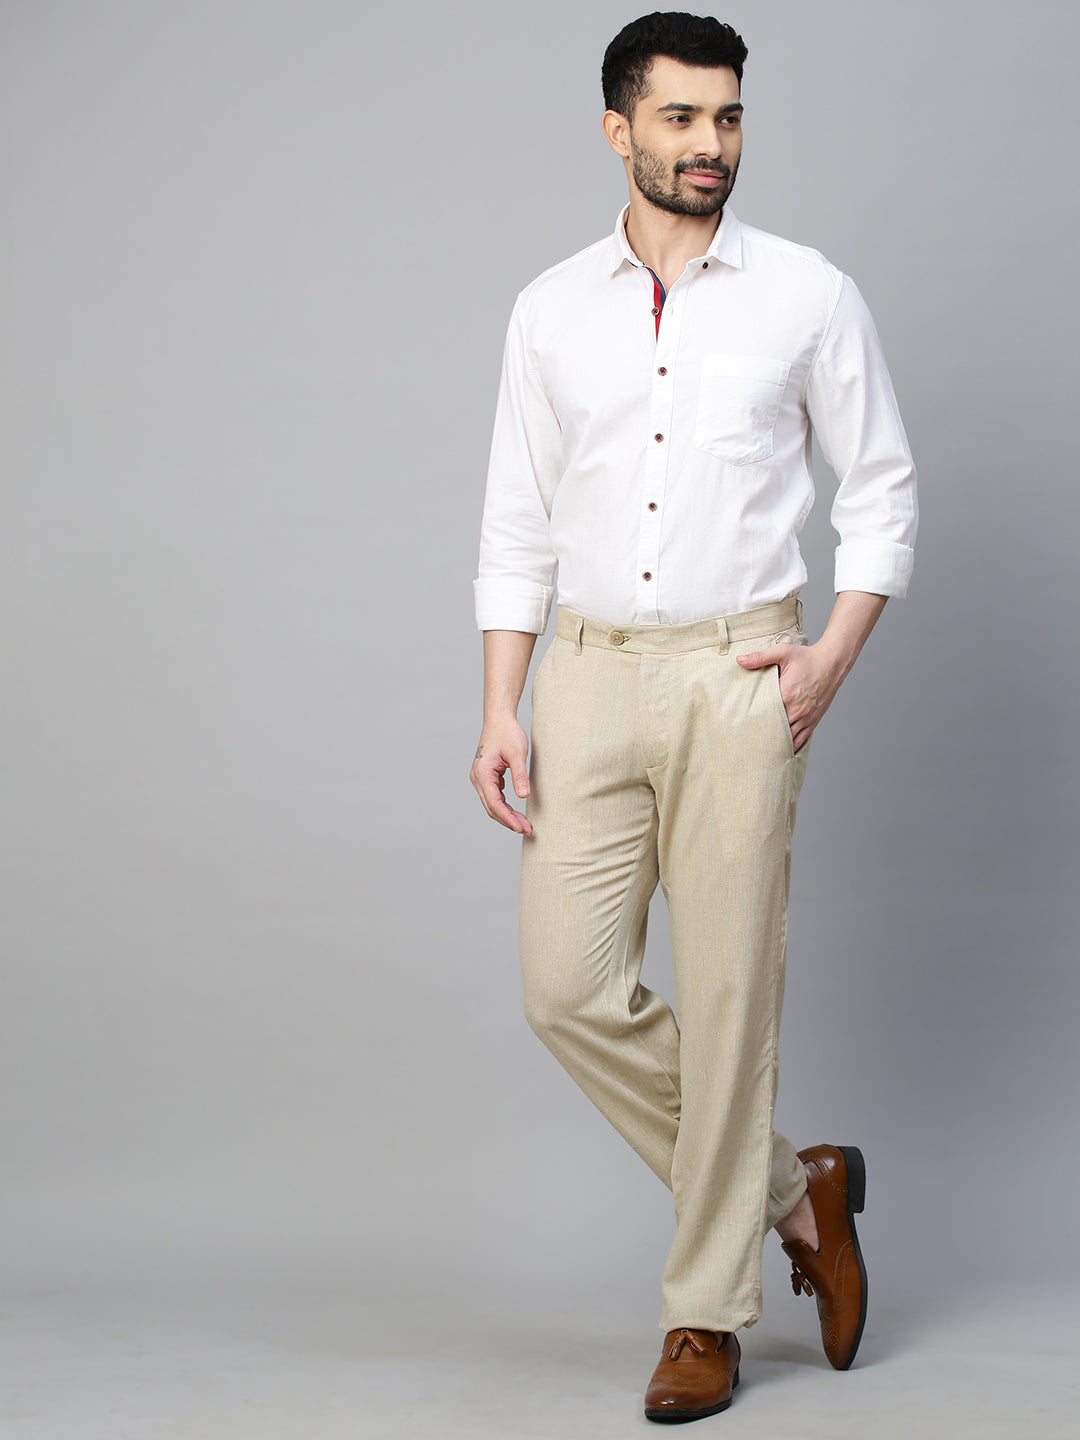 Linen Trousers Ref50261t  Tom Murphys Formal and Menswear